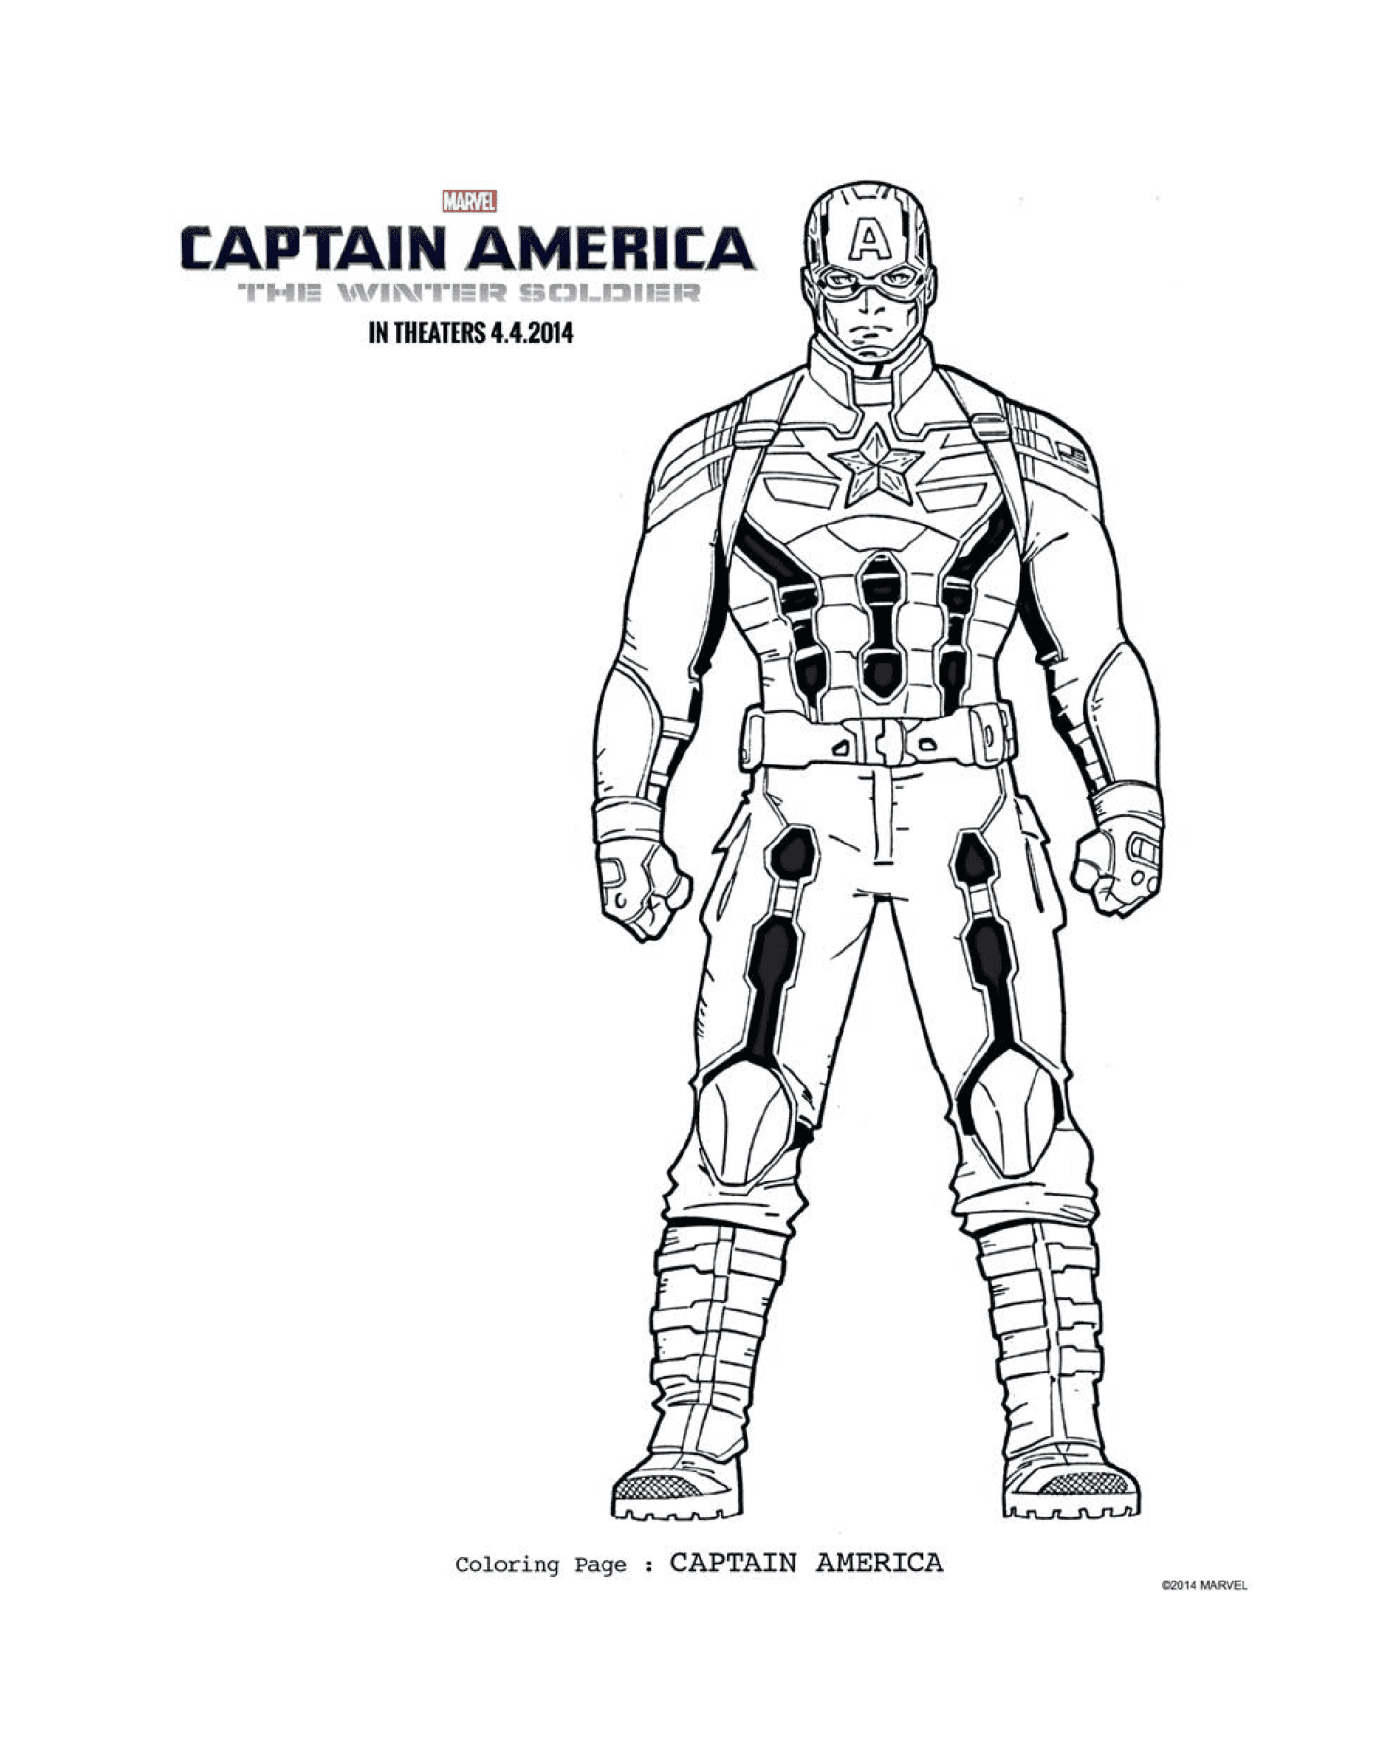  《美国67号船长》 身穿制服的男子形象 